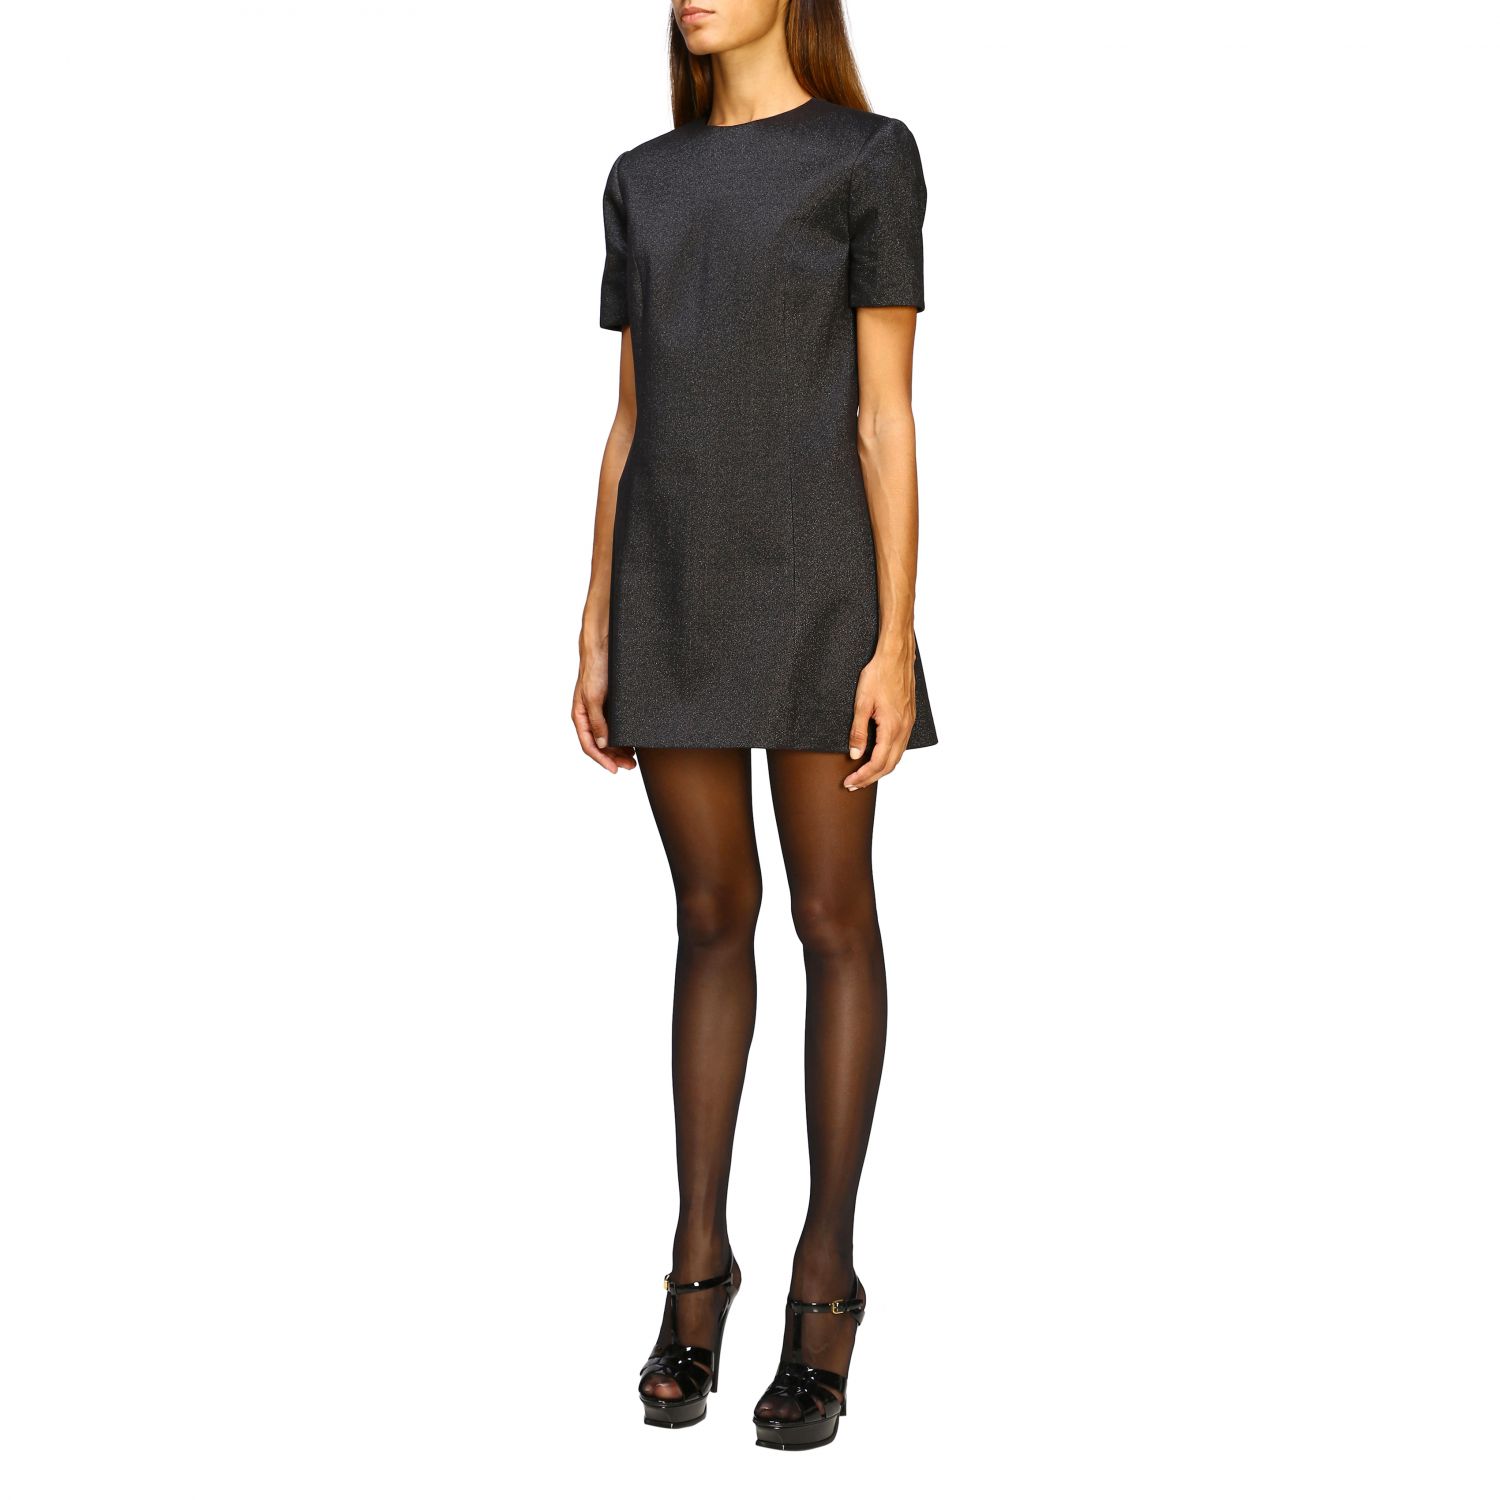 Saint Laurent Outlet: dress for women - Black | Saint Laurent dress